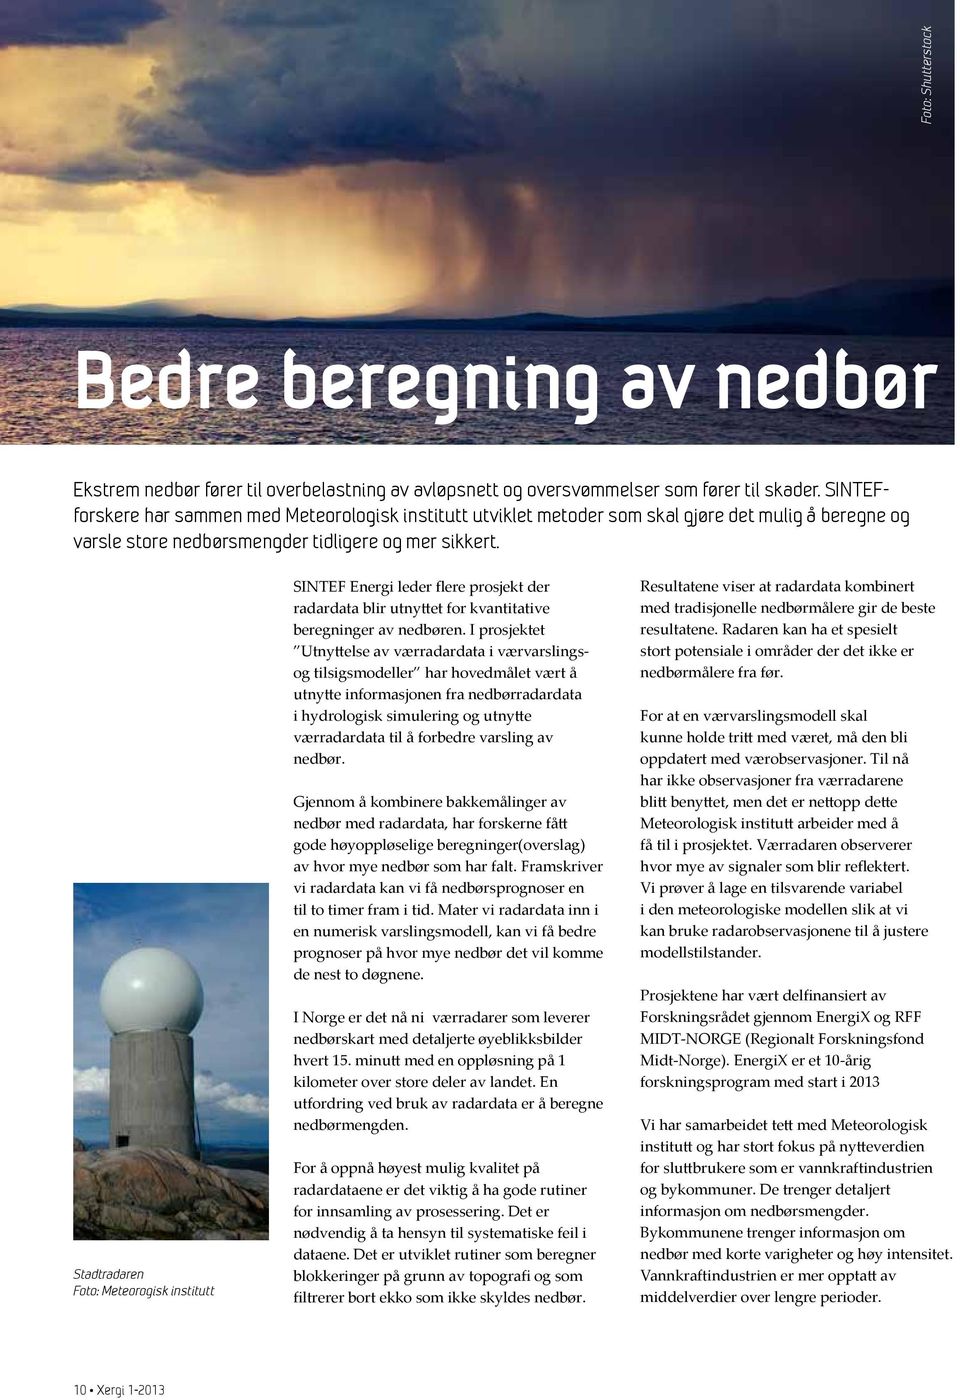 Stadtradaren Foto: Meteorogisk institutt SINTEF Energi leder flere prosjekt der radardata blir utnyttet for kvantitative beregninger av nedbøren.